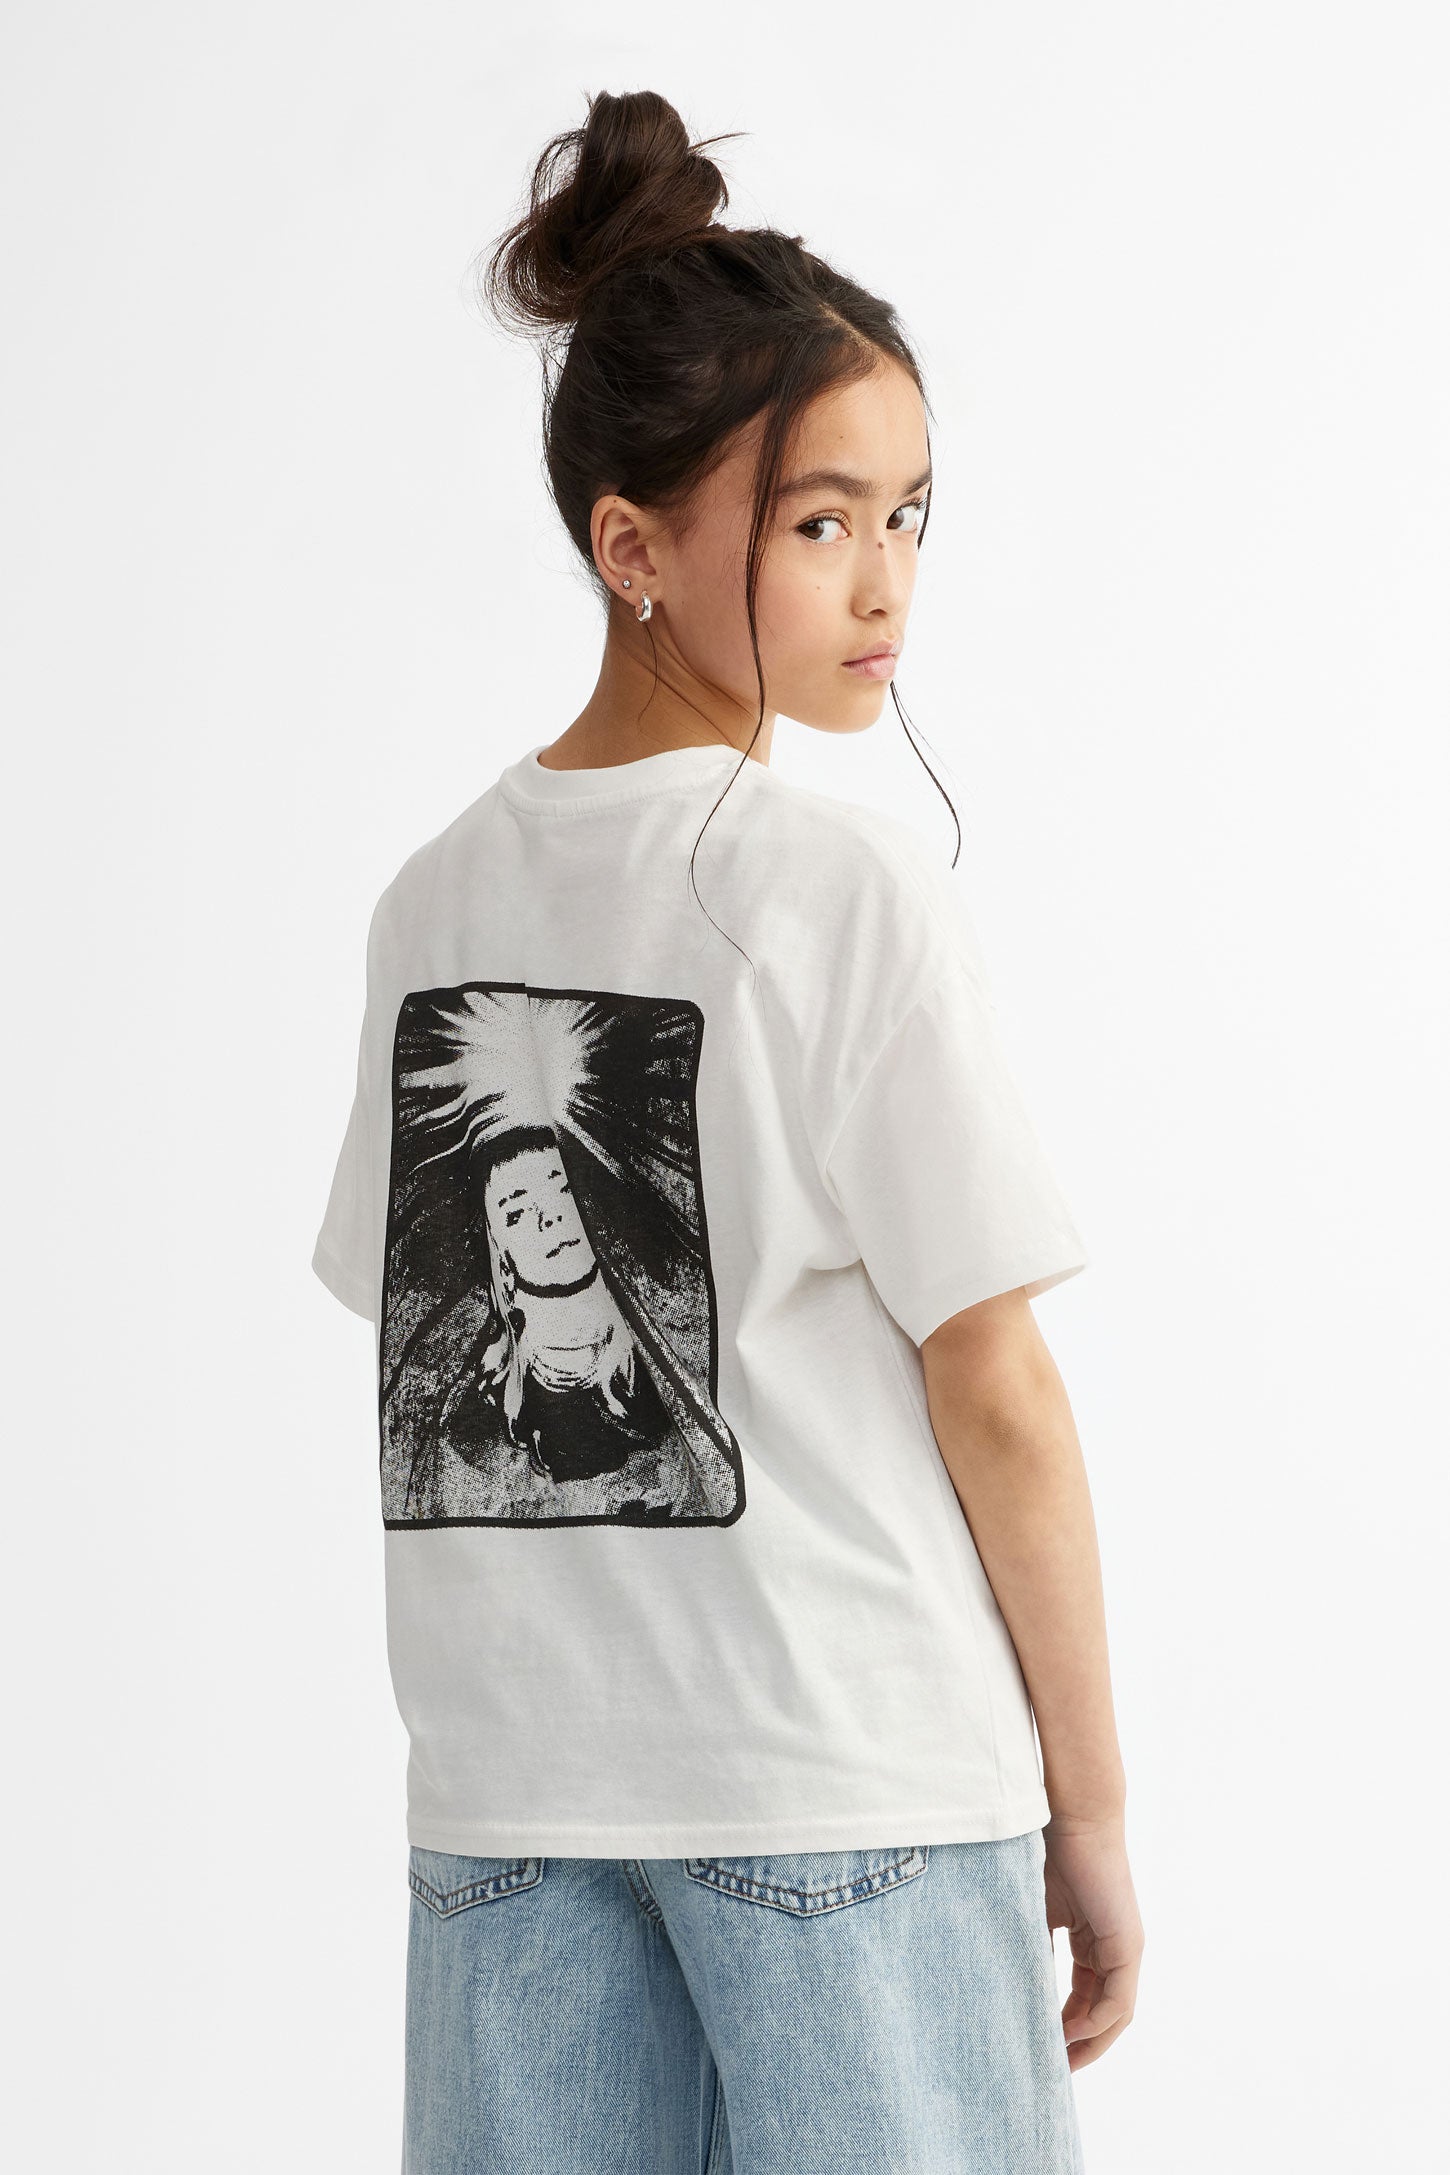 T-shirt col rond imprimé Billie Eilish - Ado fille && BLANC MULTI